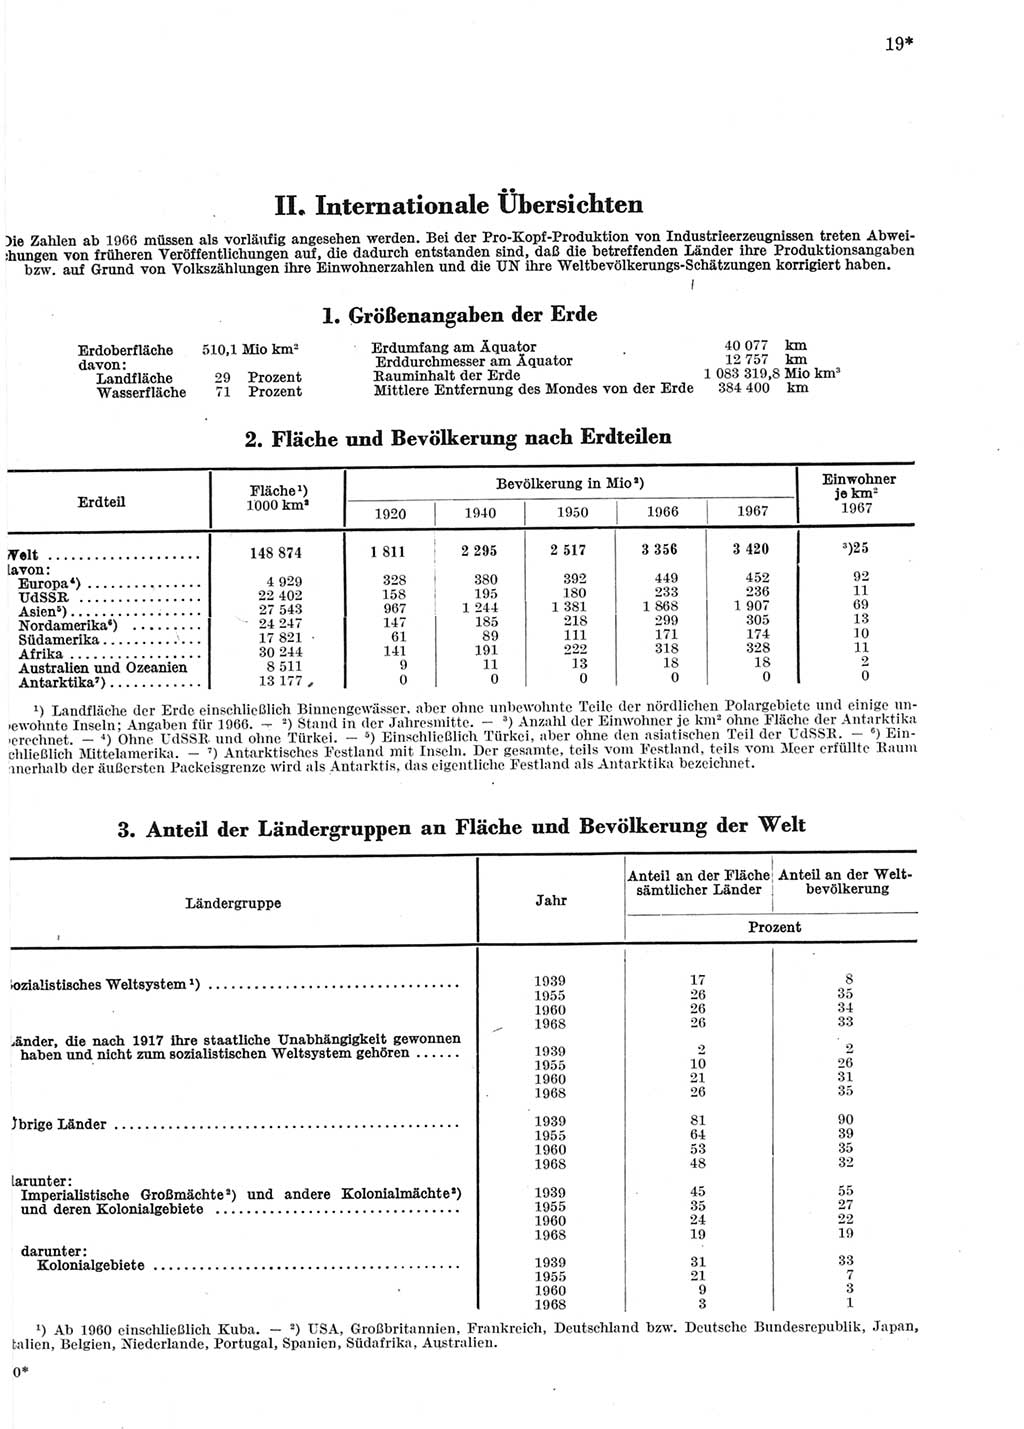 Statistisches Jahrbuch der Deutschen Demokratischen Republik (DDR) 1969, Seite 19 (Stat. Jb. DDR 1969, S. 19)